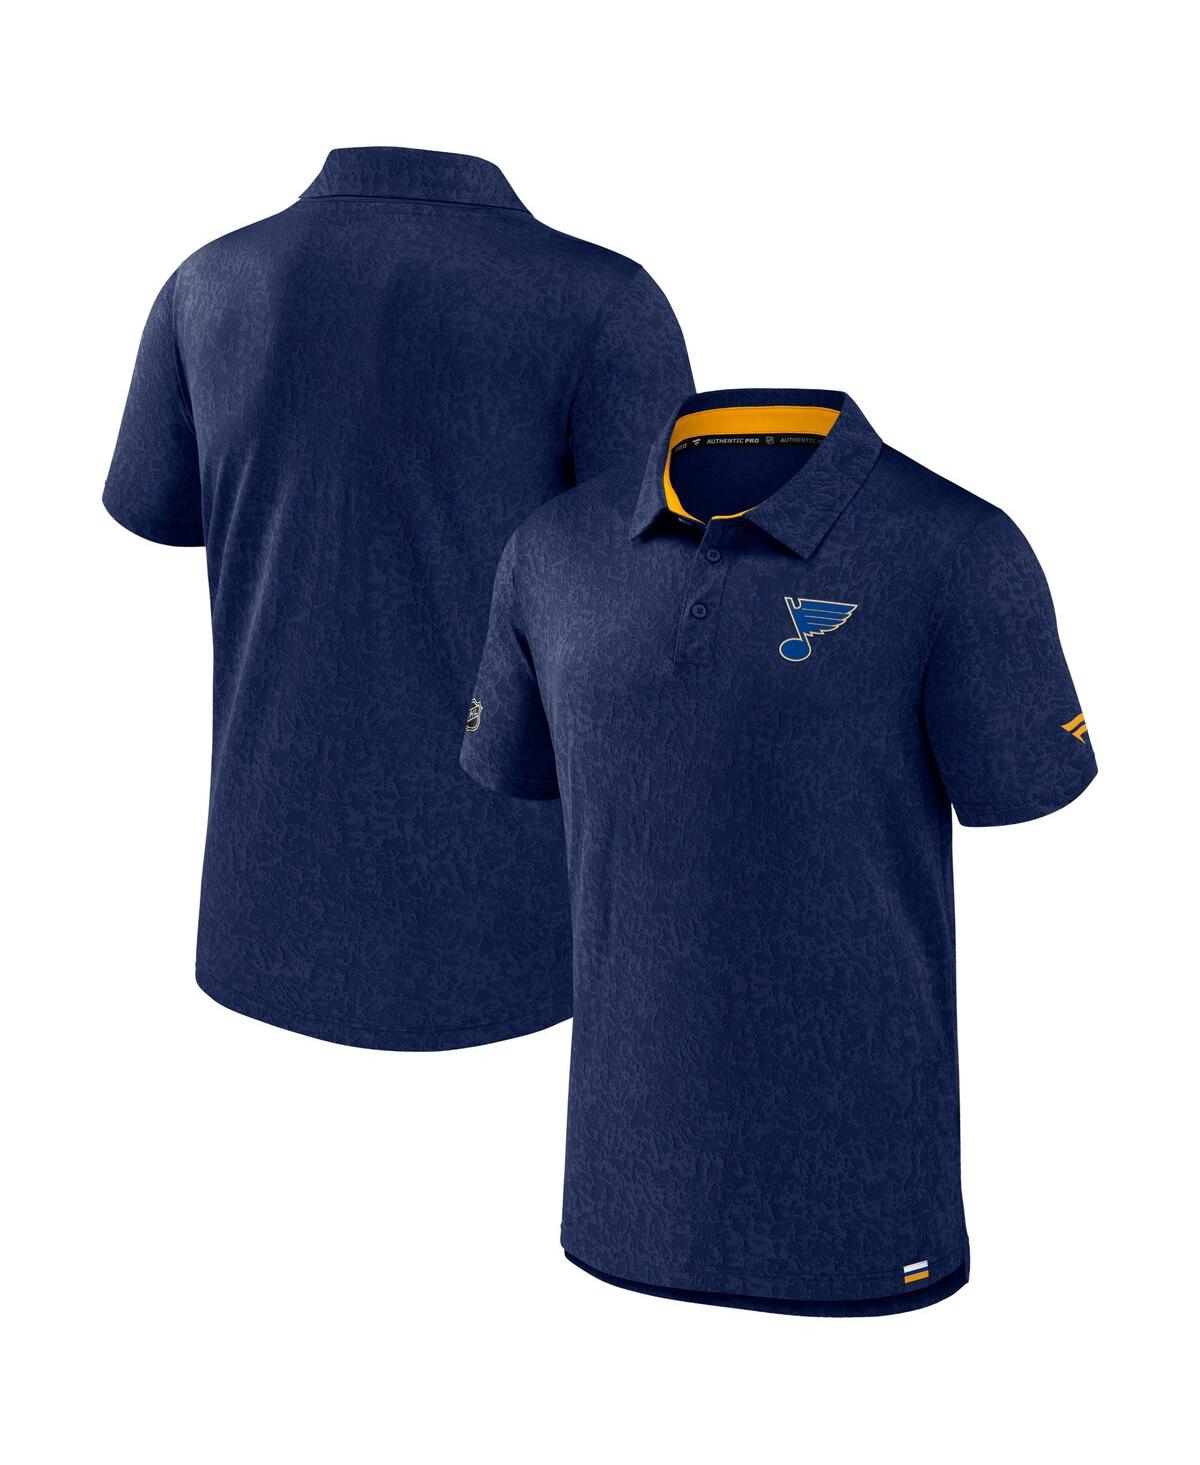 Shop Fanatics Men's  Navy St. Louis Blues Authentic Pro Jacquard Polo Shirt